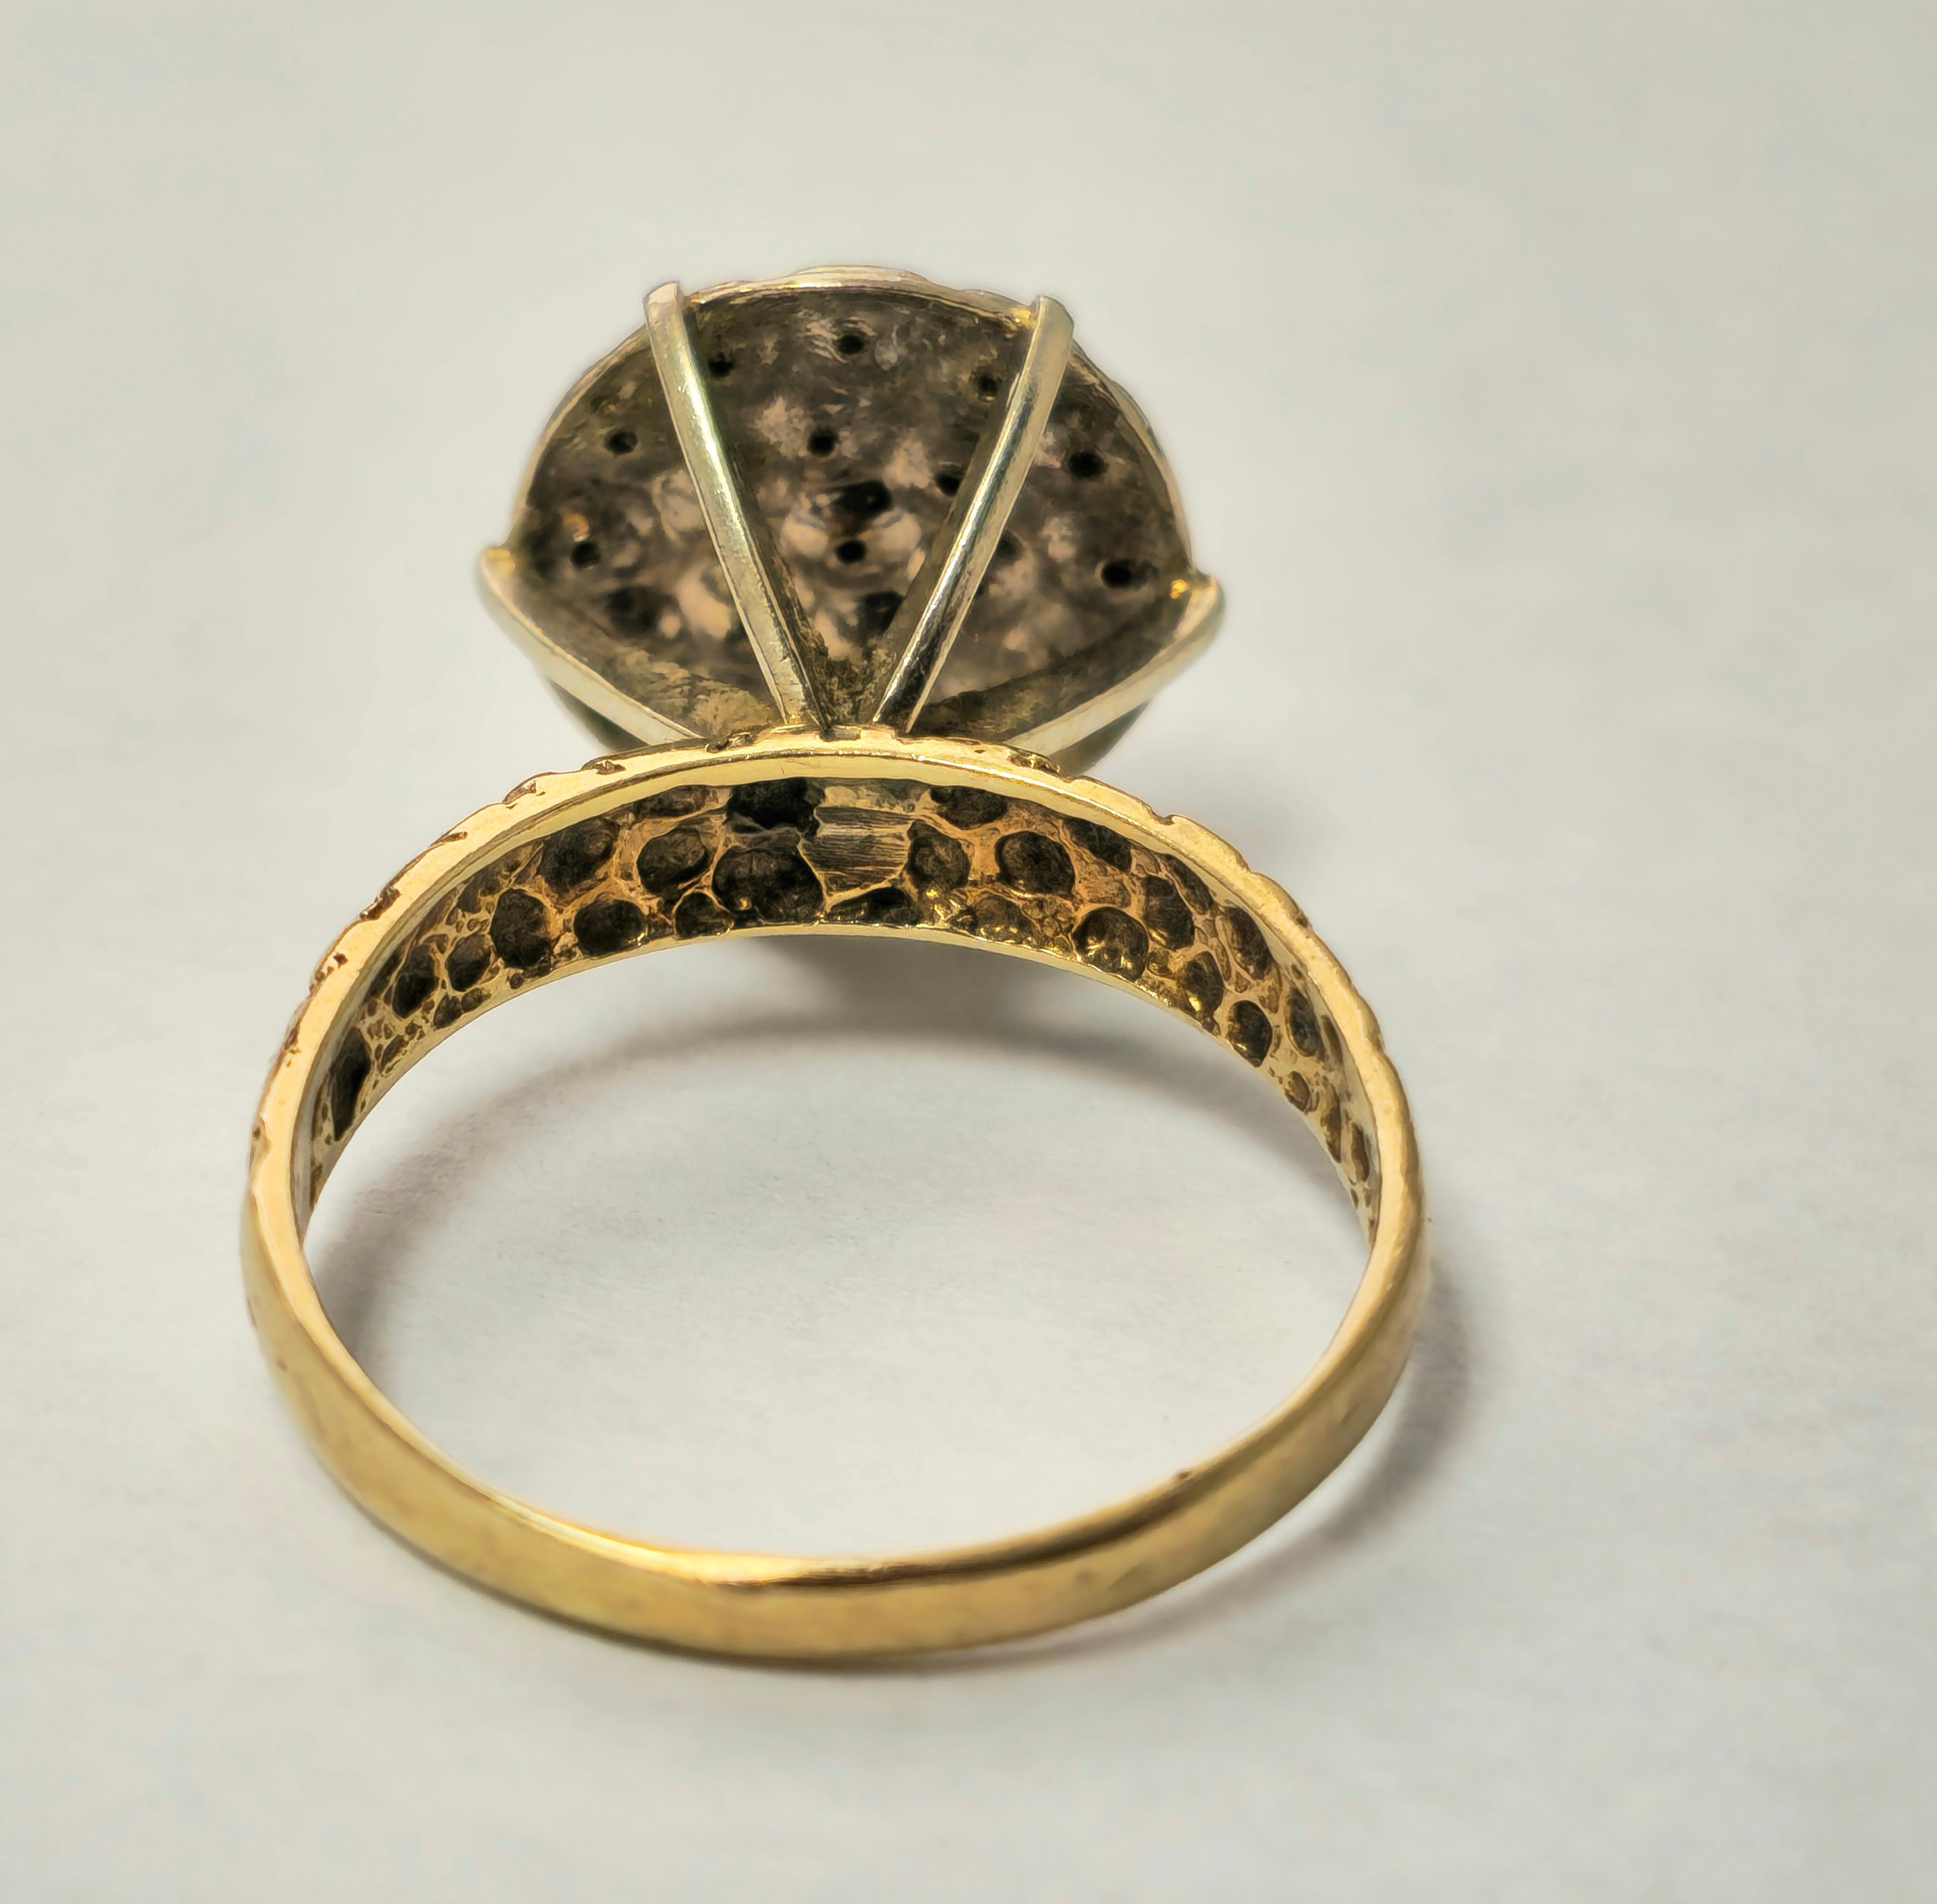 Voici notre bague de fiançailles en diamant à motif de fleur vintage, méticuleusement fabriquée en luxueux or jaune 14k. Ornée d'un superbe total de 1/4 de carat de diamants ronds d'origine naturelle, de pureté I2 et de couleur G, cette bague exsude